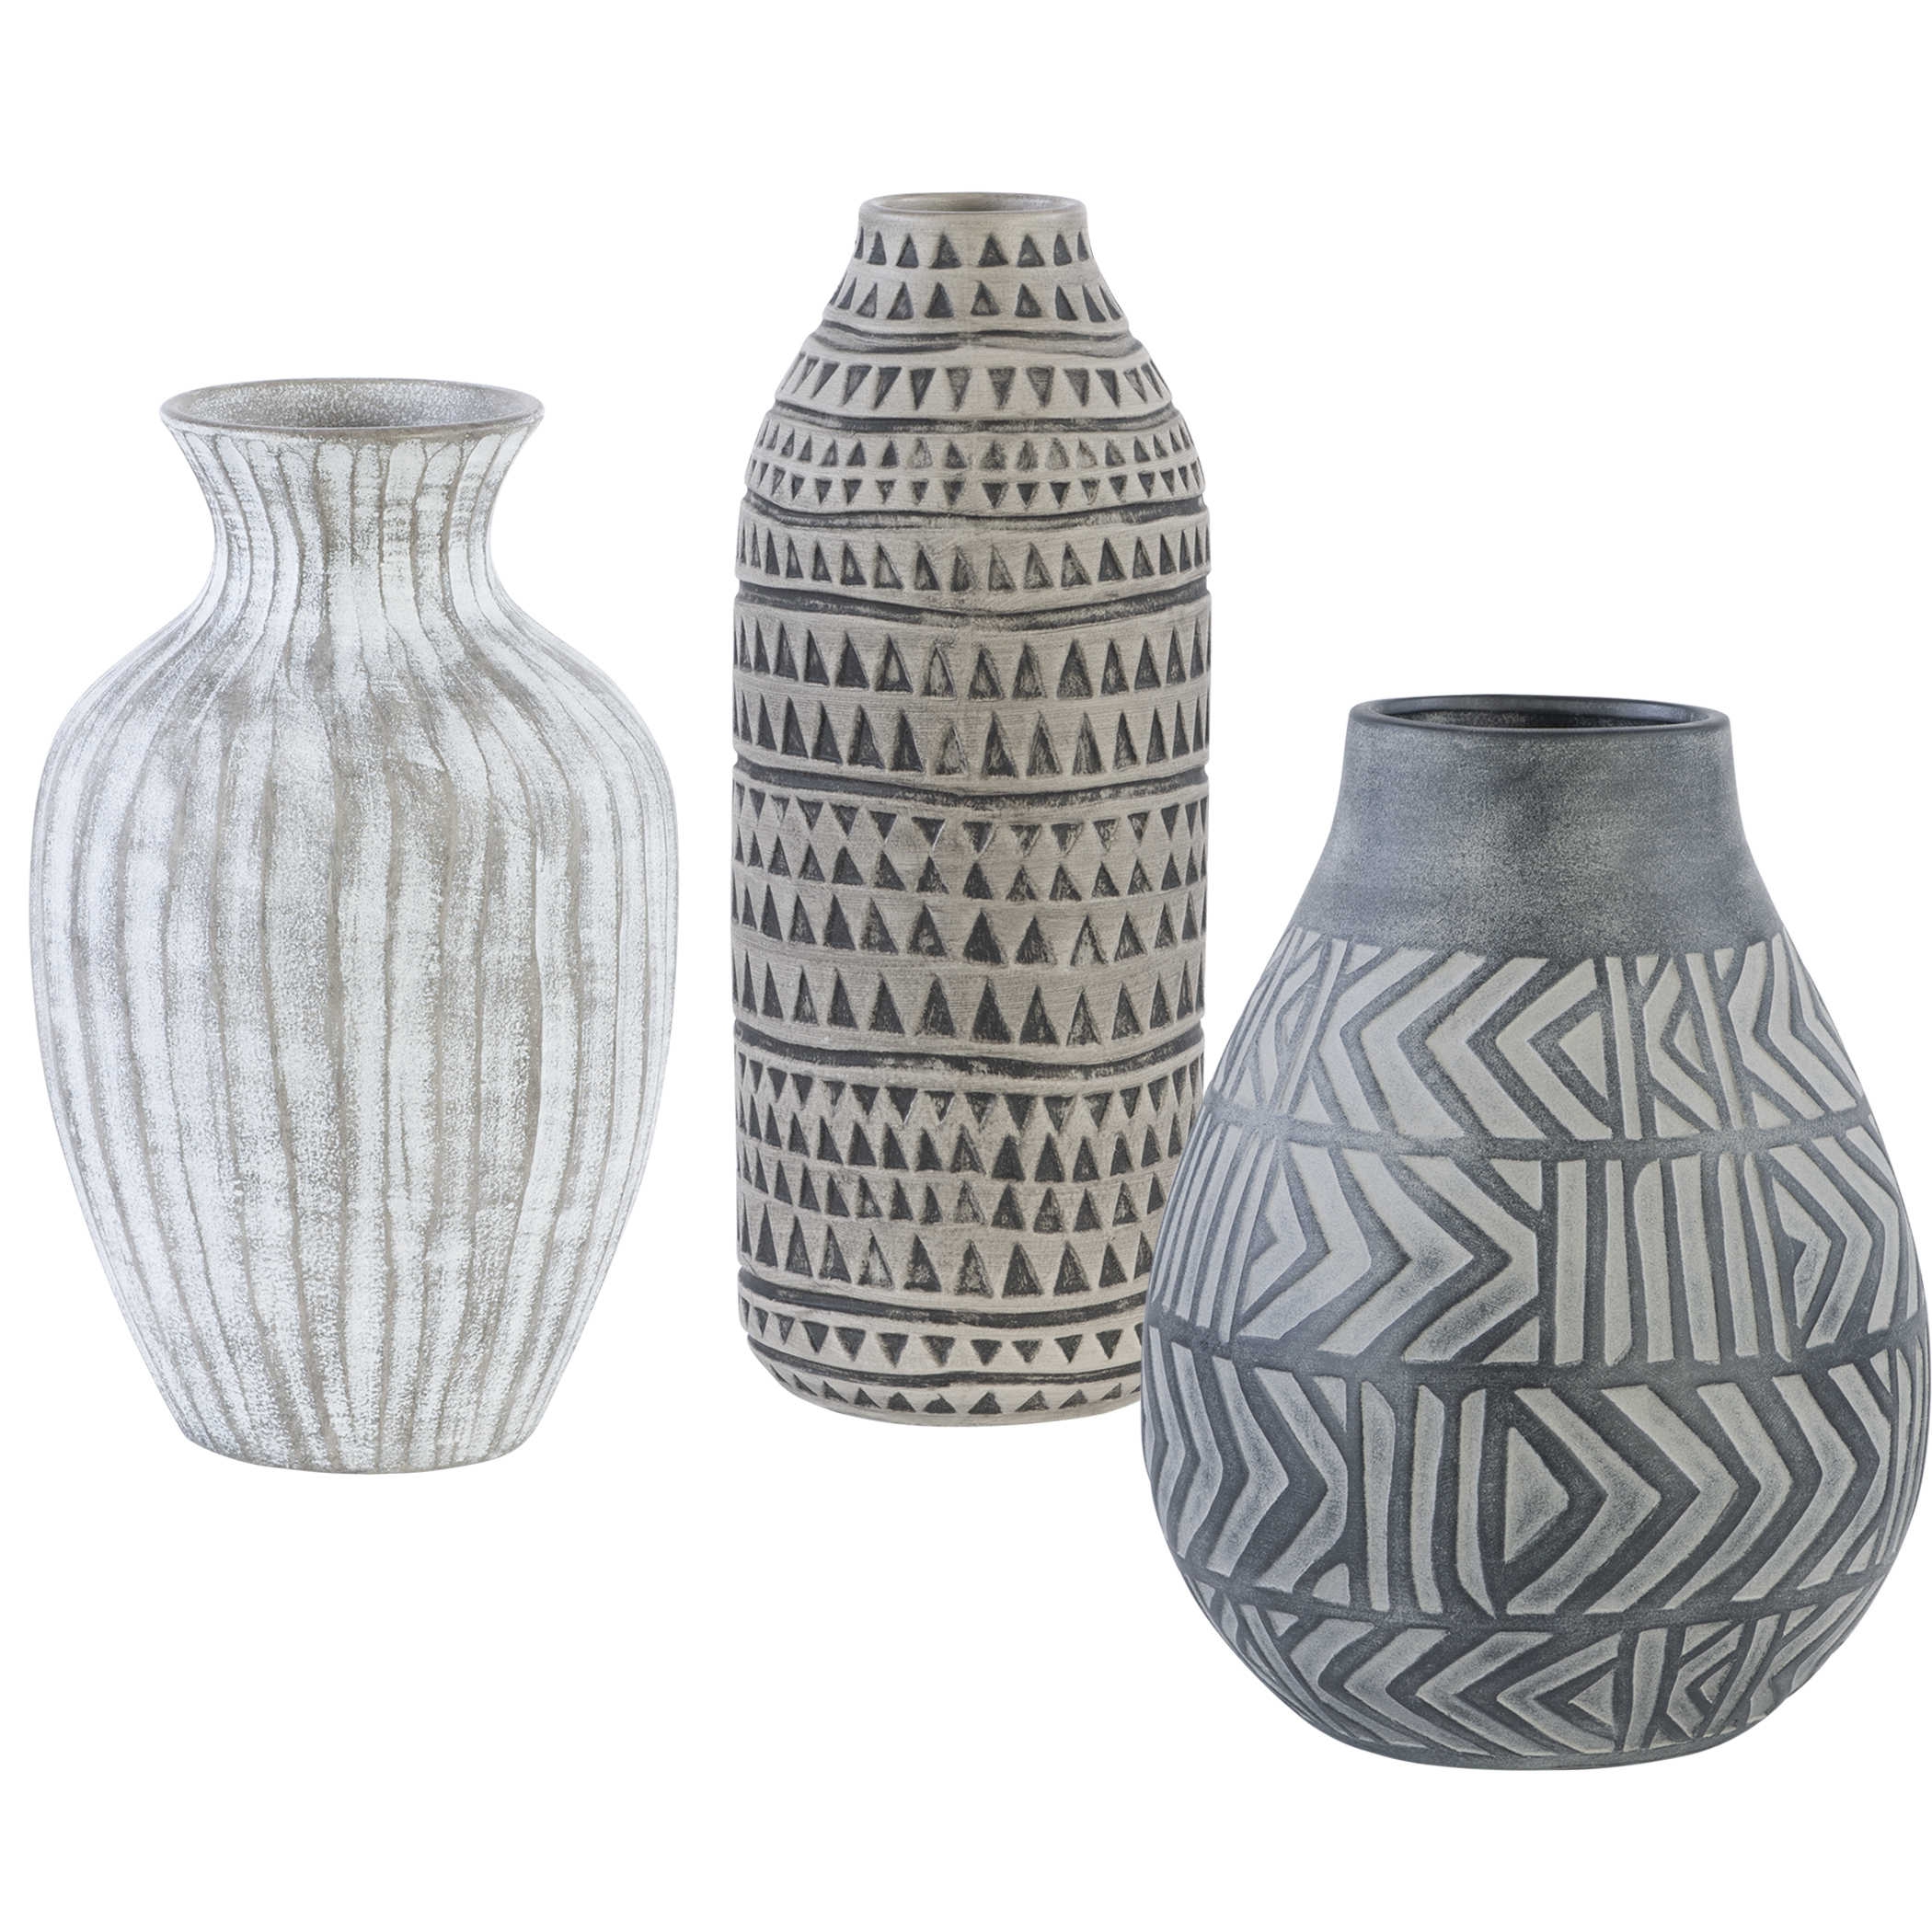 Natchez Geometric Vases, S/3 - Image 0